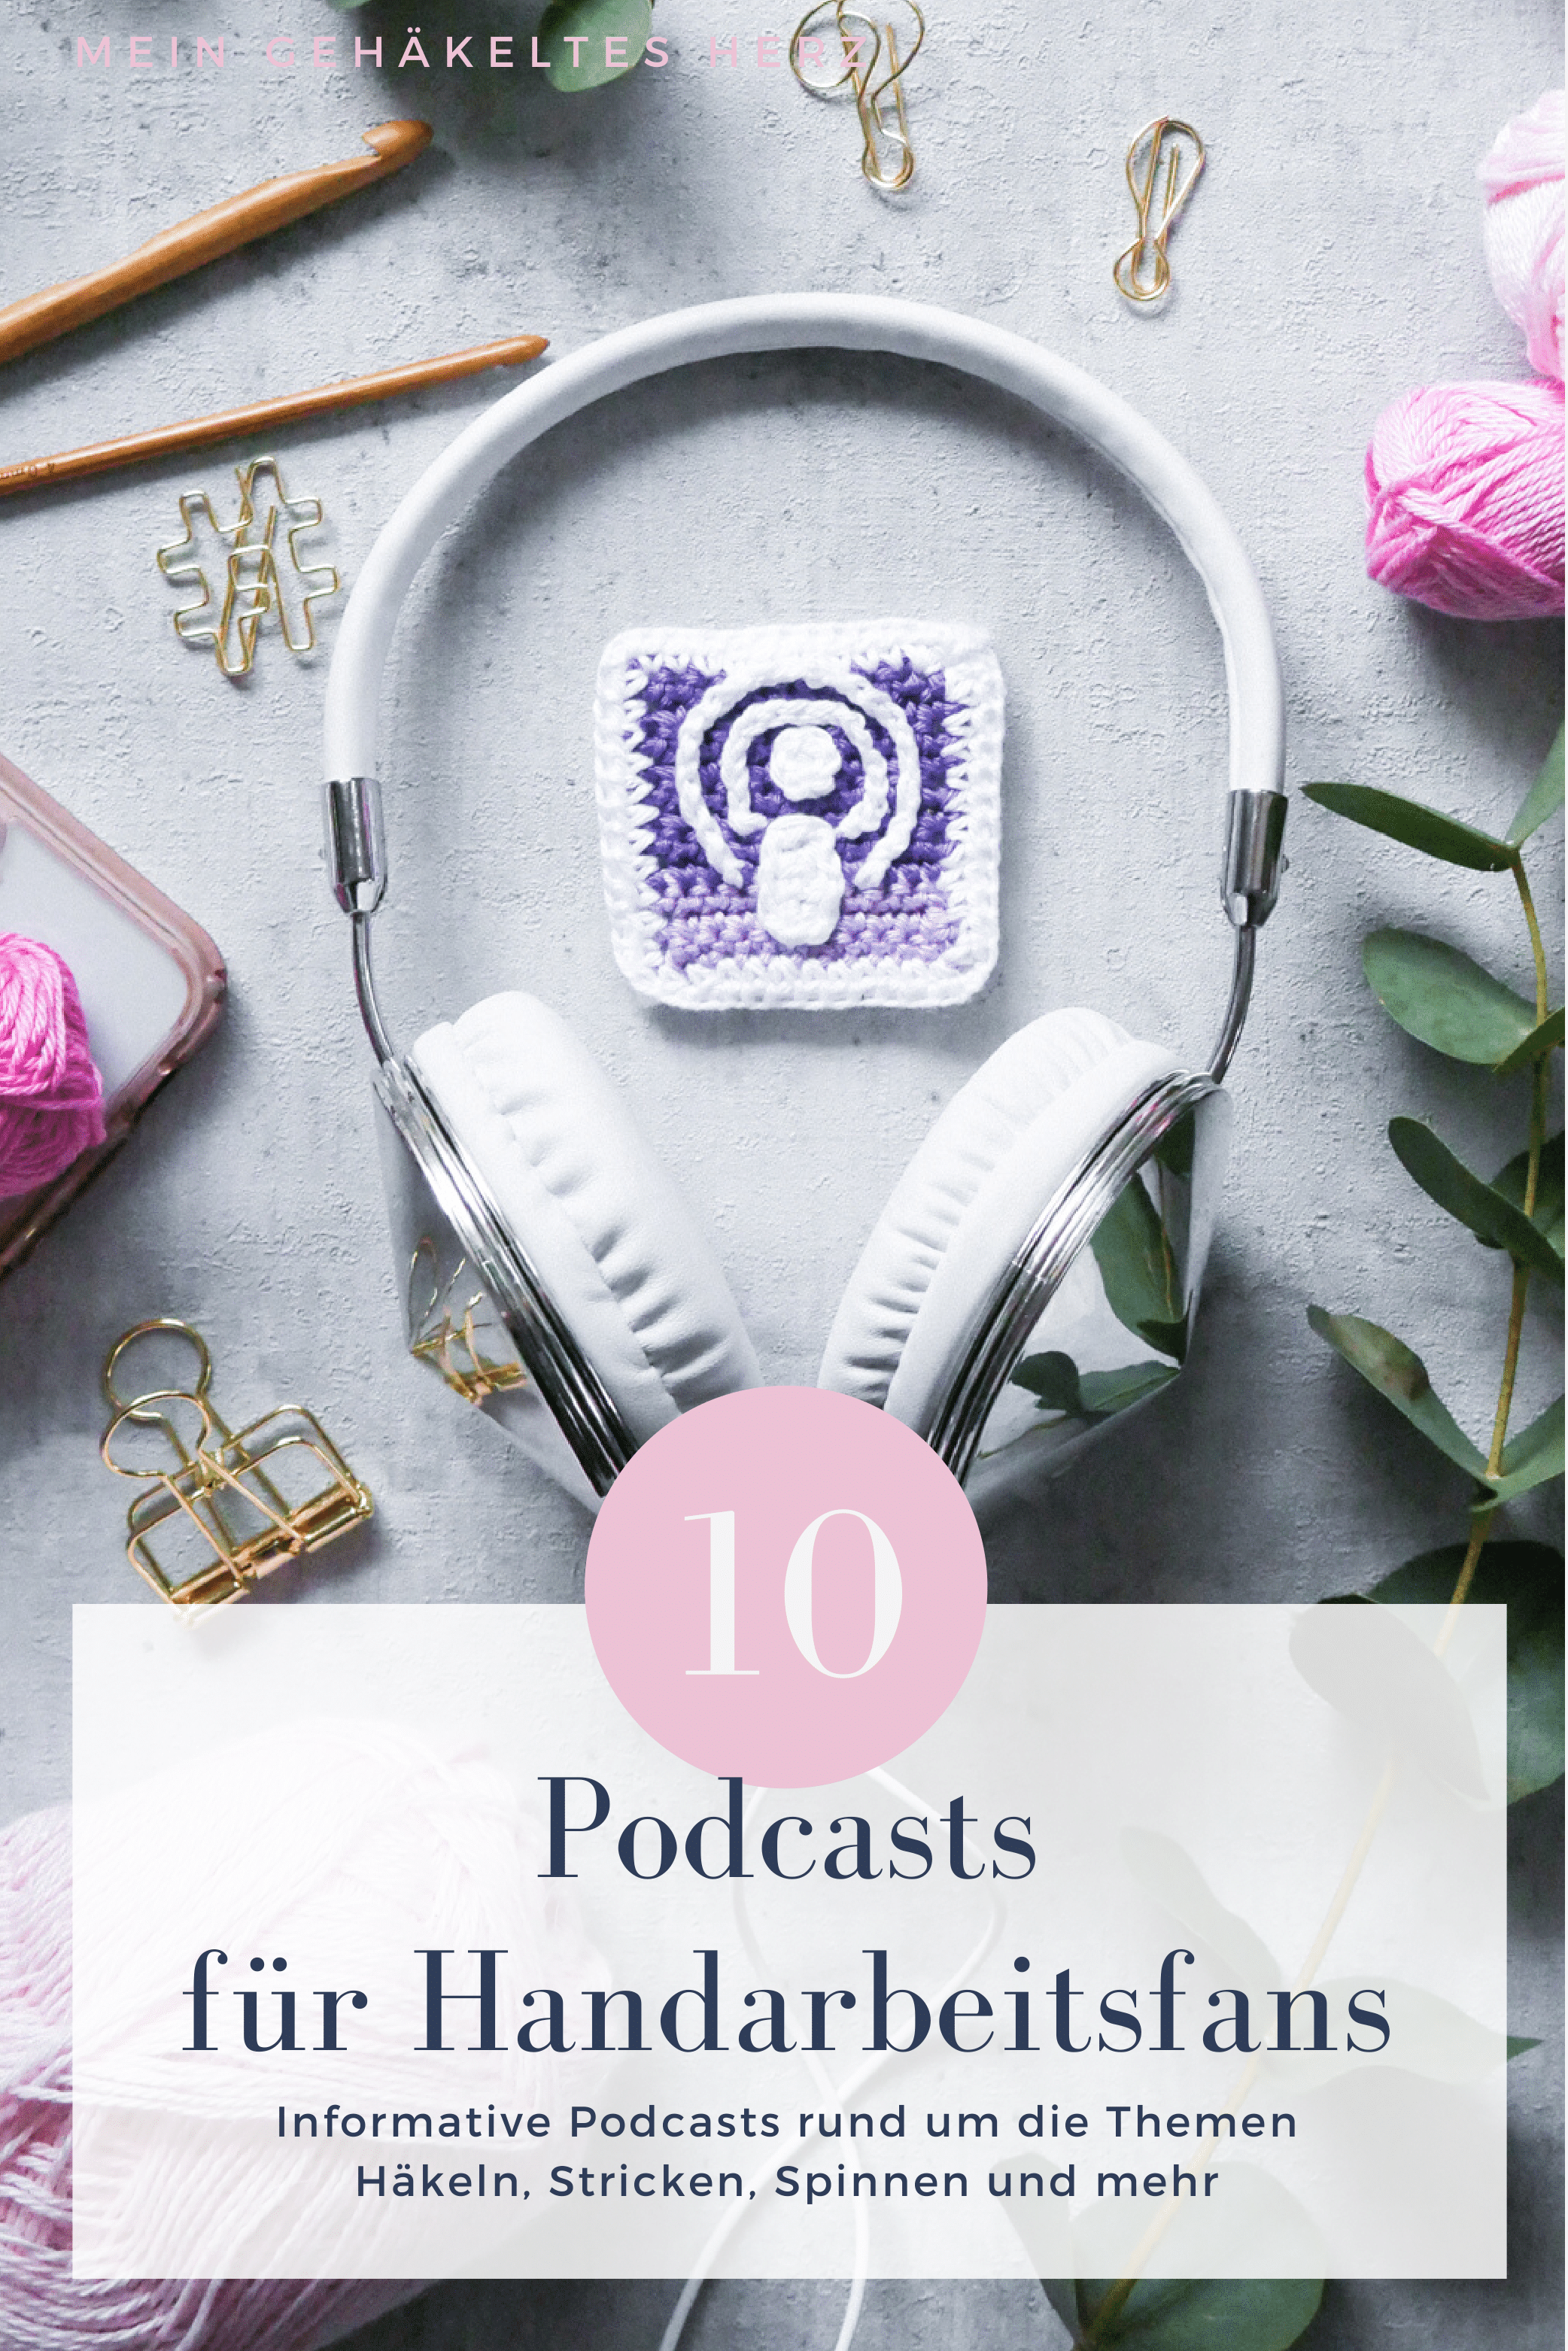 Podcast-Shows für Kreative